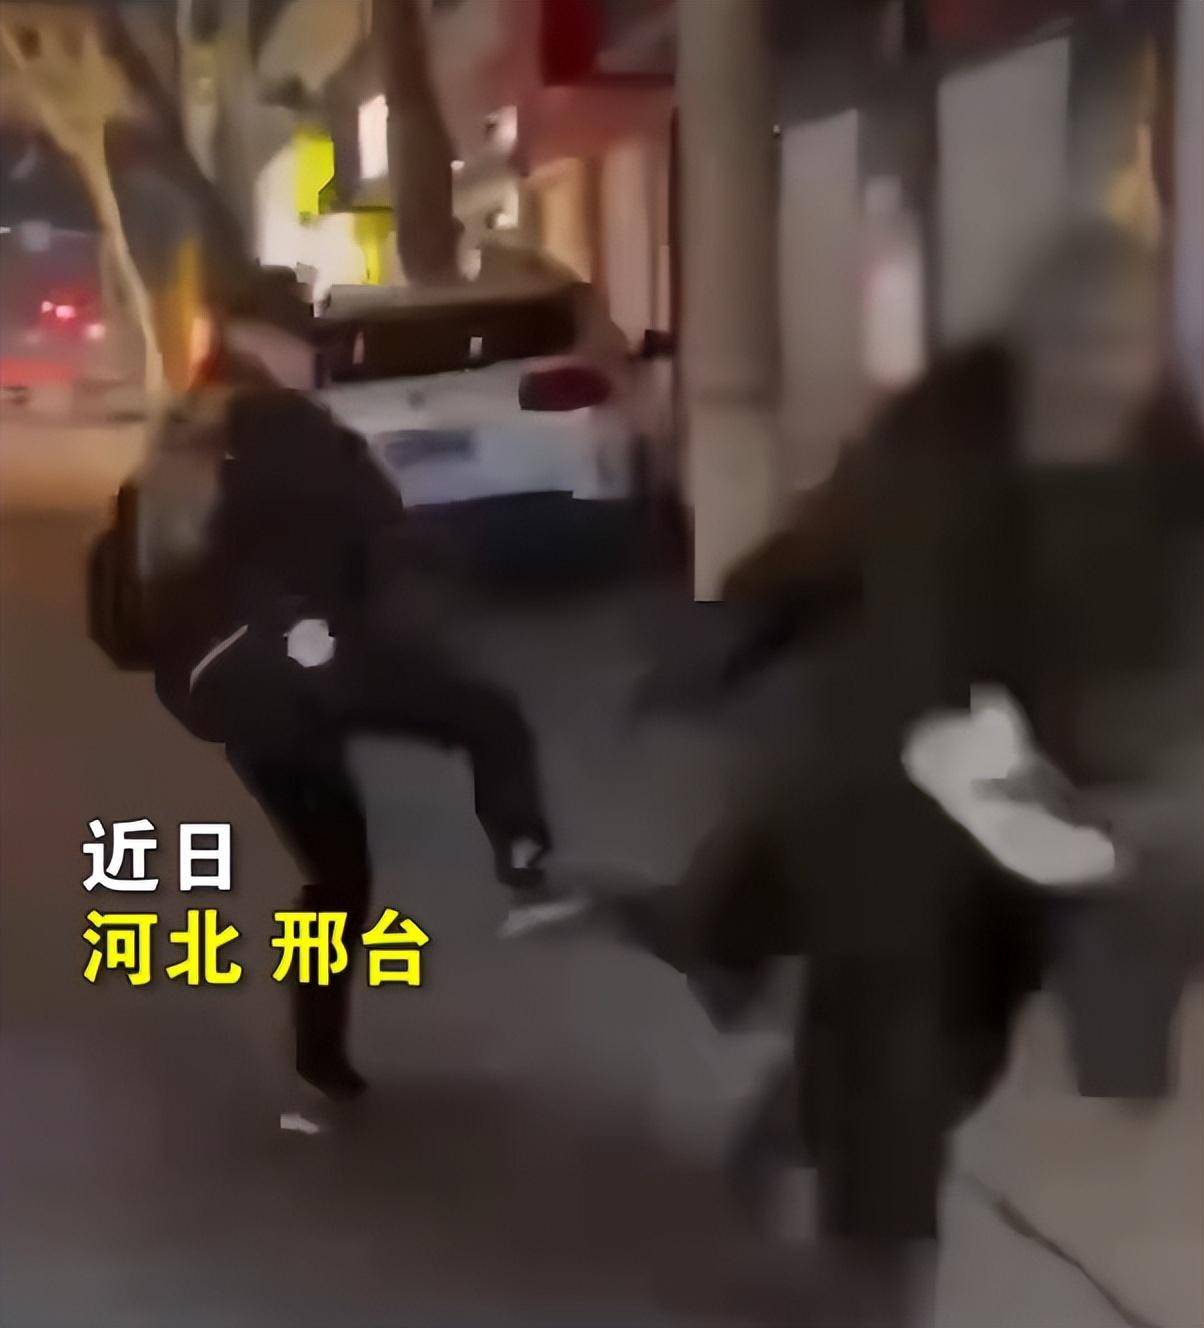 原标题：3年轻人当街欺辱拾荒老人，背后跳起飞踹老人还拍视频取乐，警方：找到涉案3人，已下拘留通知